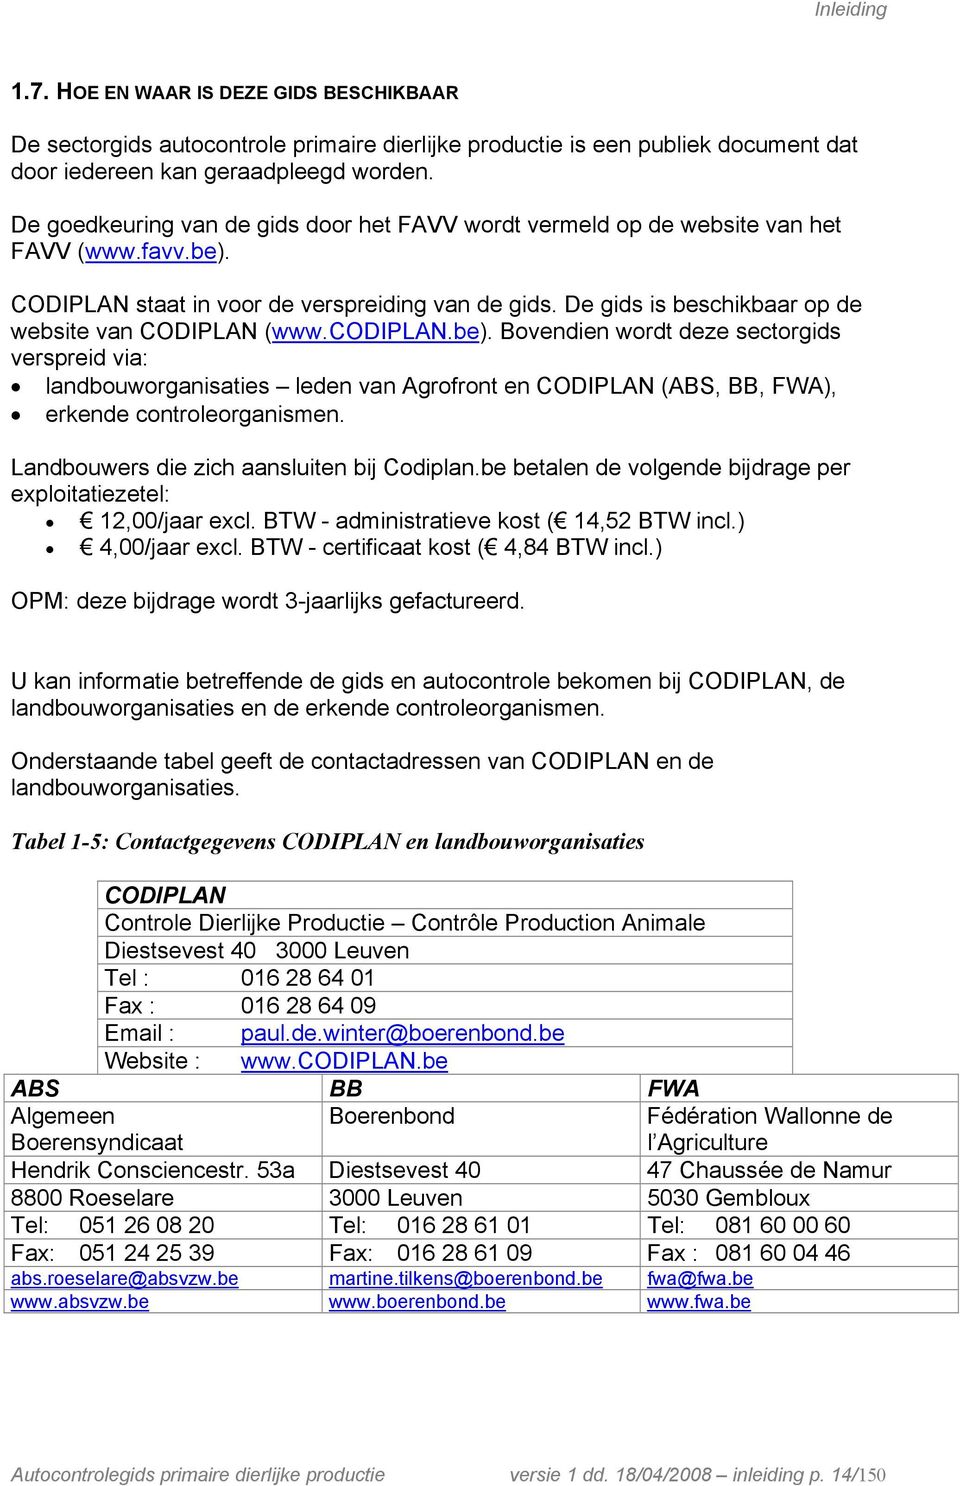 De gids is beschikbaar op de website van CODIPLAN (www.codiplan.be).